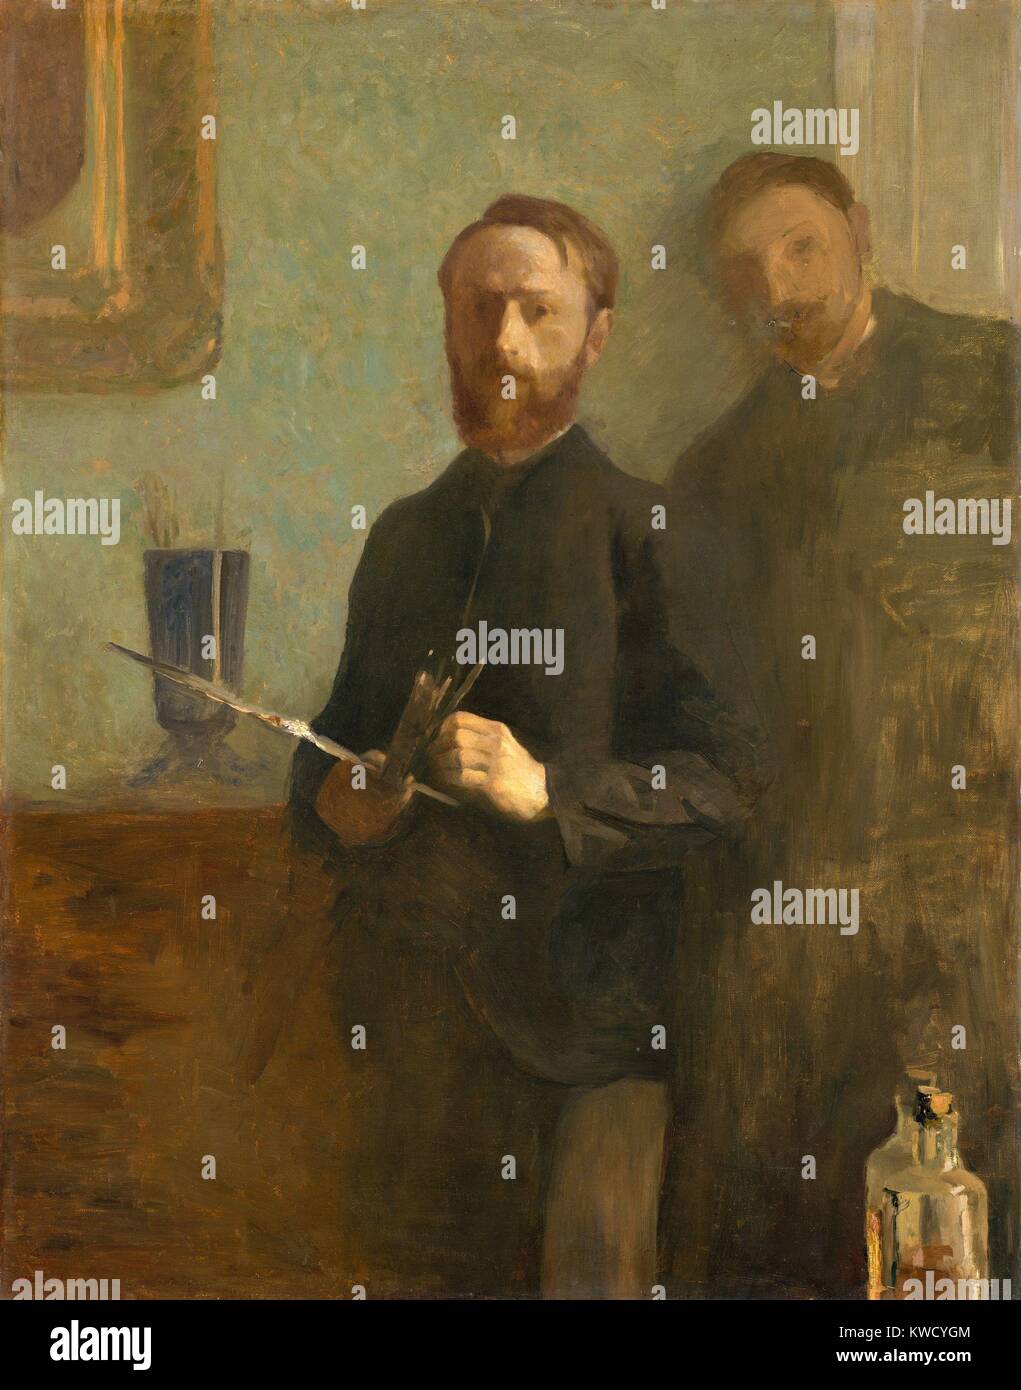 Autoritratto con Waroquy, da Edouard Vuillard, 1889, francese Post-Impressionist pittura ad olio. Il 22 enne artista mantiene la sua tavolozza e pennelli. Dietro di lui è il suo amico, Waroquy, con i suoi lineamenti del viso e il suo corpo abbozzato. Waroquy il nome (BSLOC 2017 5 96) Foto Stock